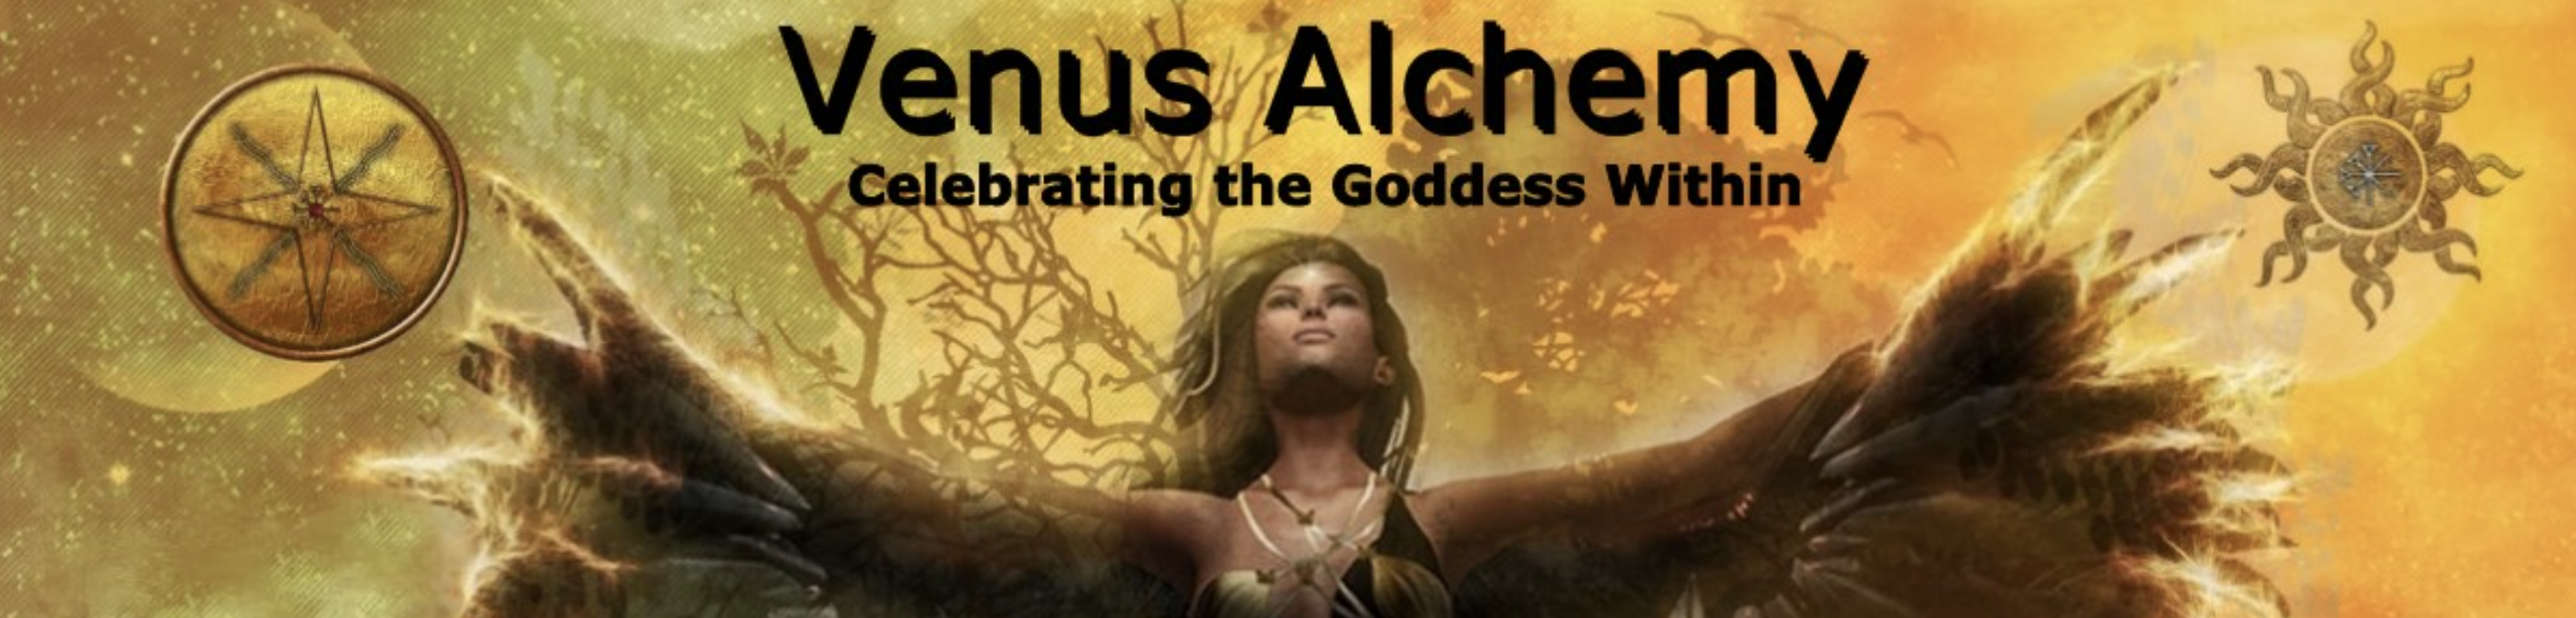 Venus Alchemy